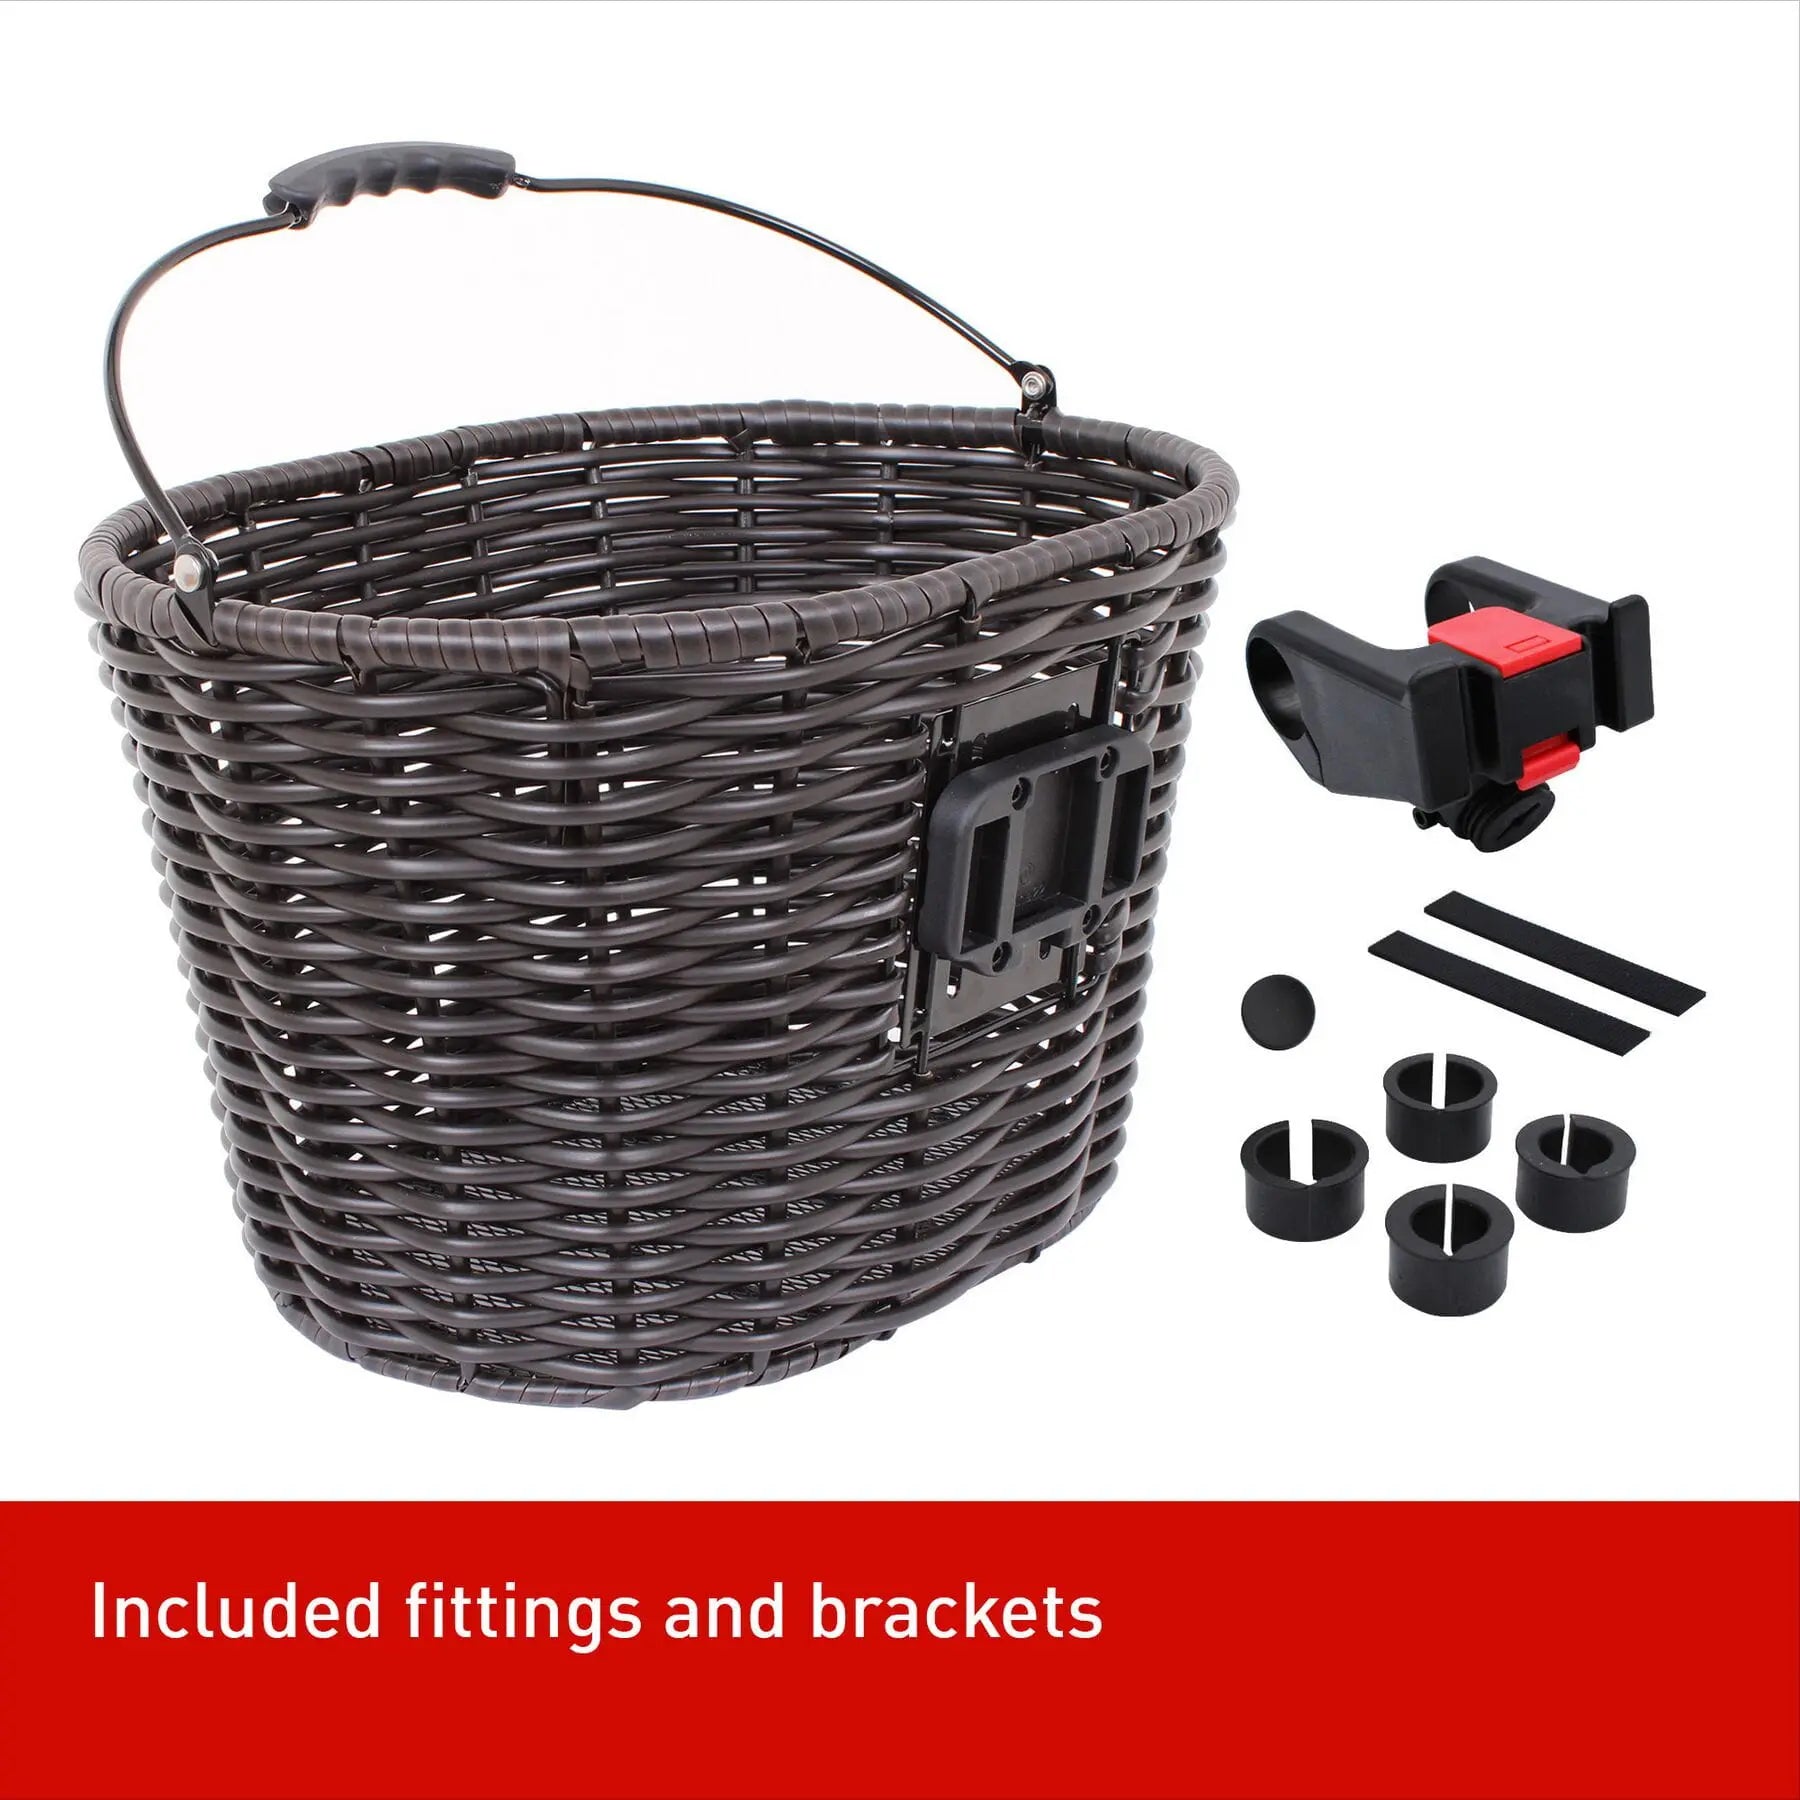 M-Part Stockbridge woven basket - handle and Quick Release Clip M-part